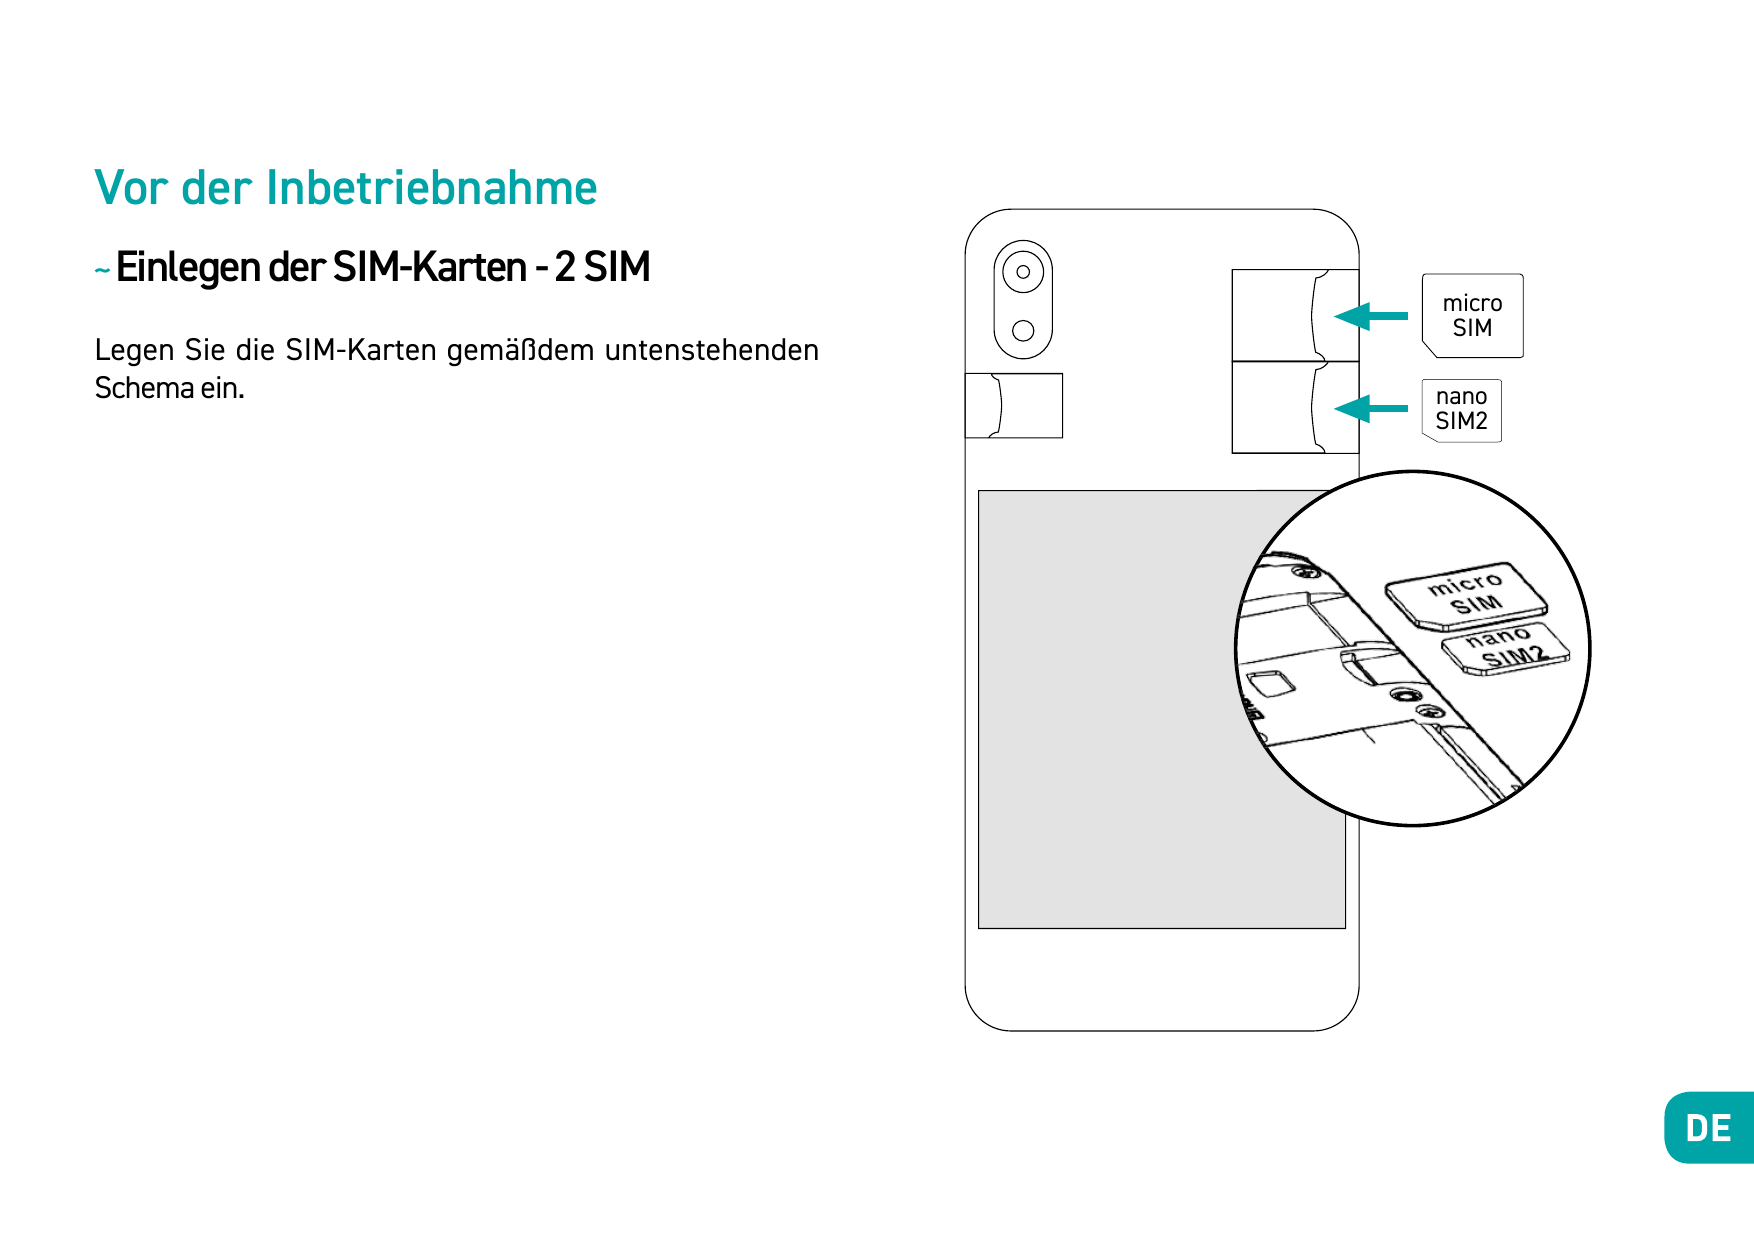 Vor der Inbetriebnahme~ Einlegen der SIM-Karten - 2 SIMLegen Sie die SIM-Karten gemäßdem untenstehendenSchema ein.microSIMnanoSI